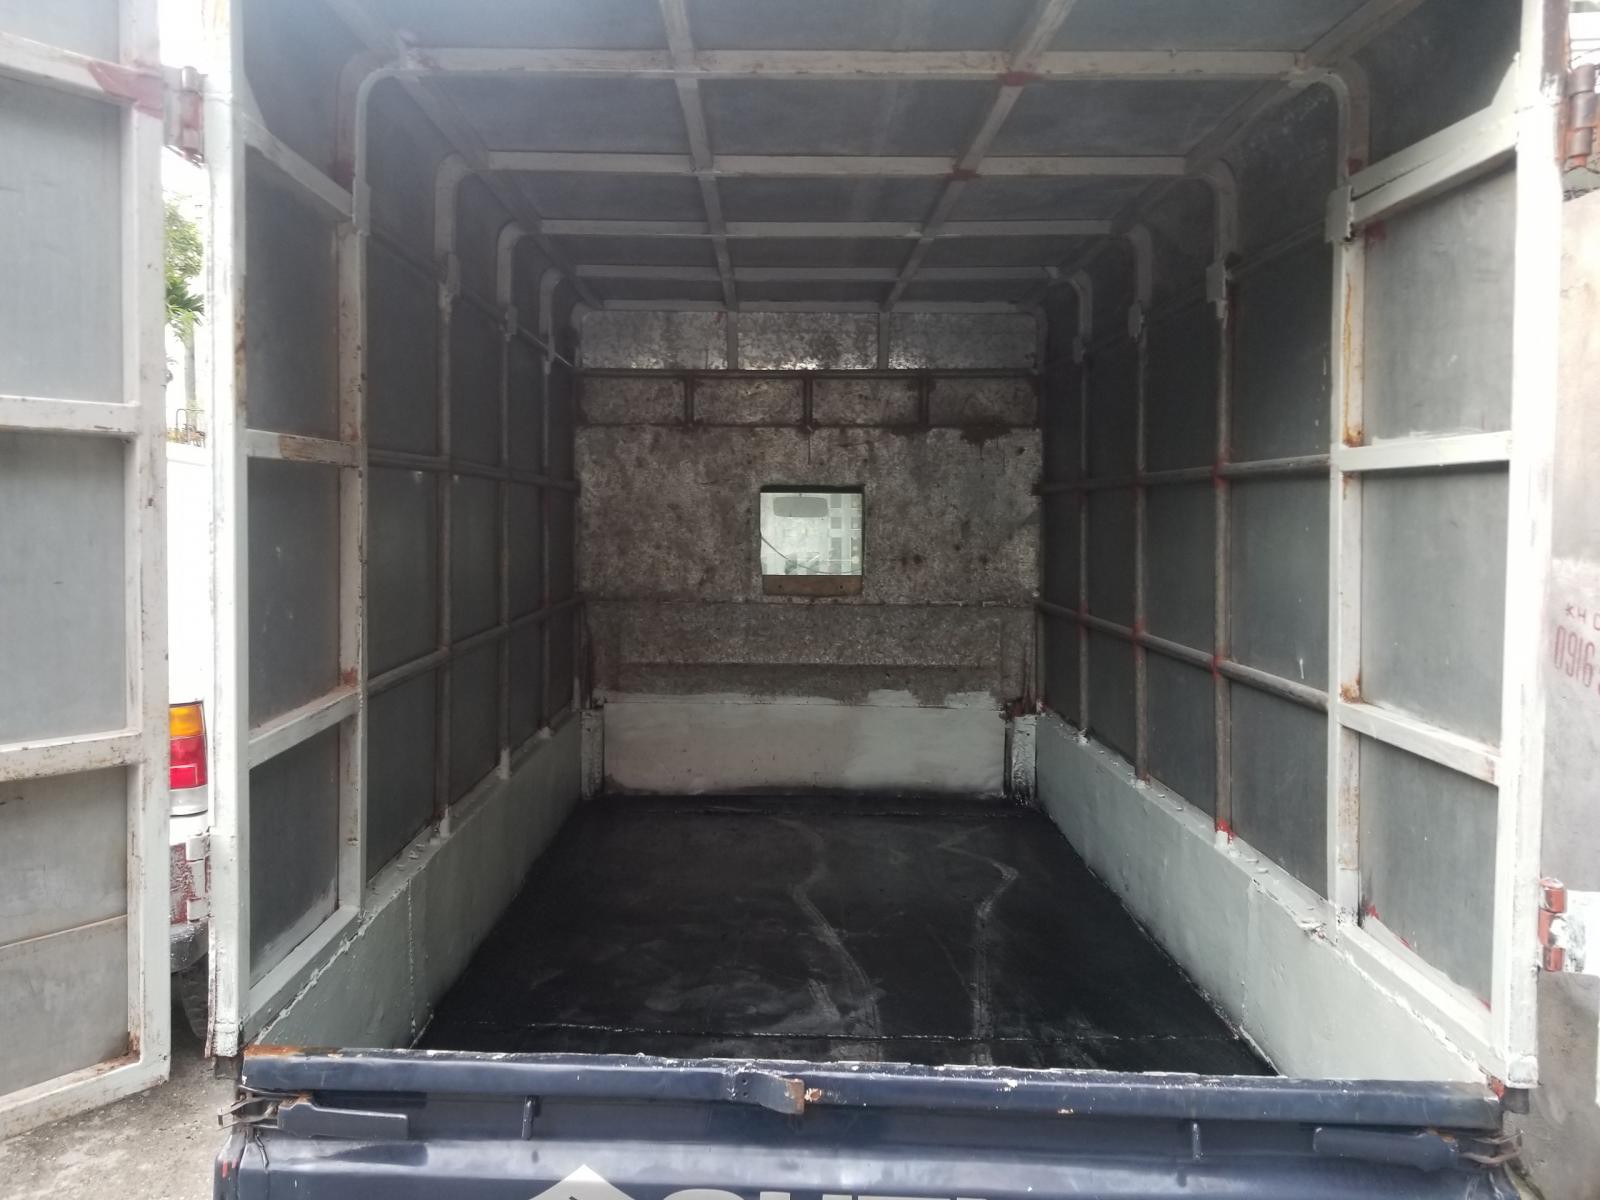 Bán xe tải 5 tạ cũ thùng kín Suzuki tại Hải Phòng